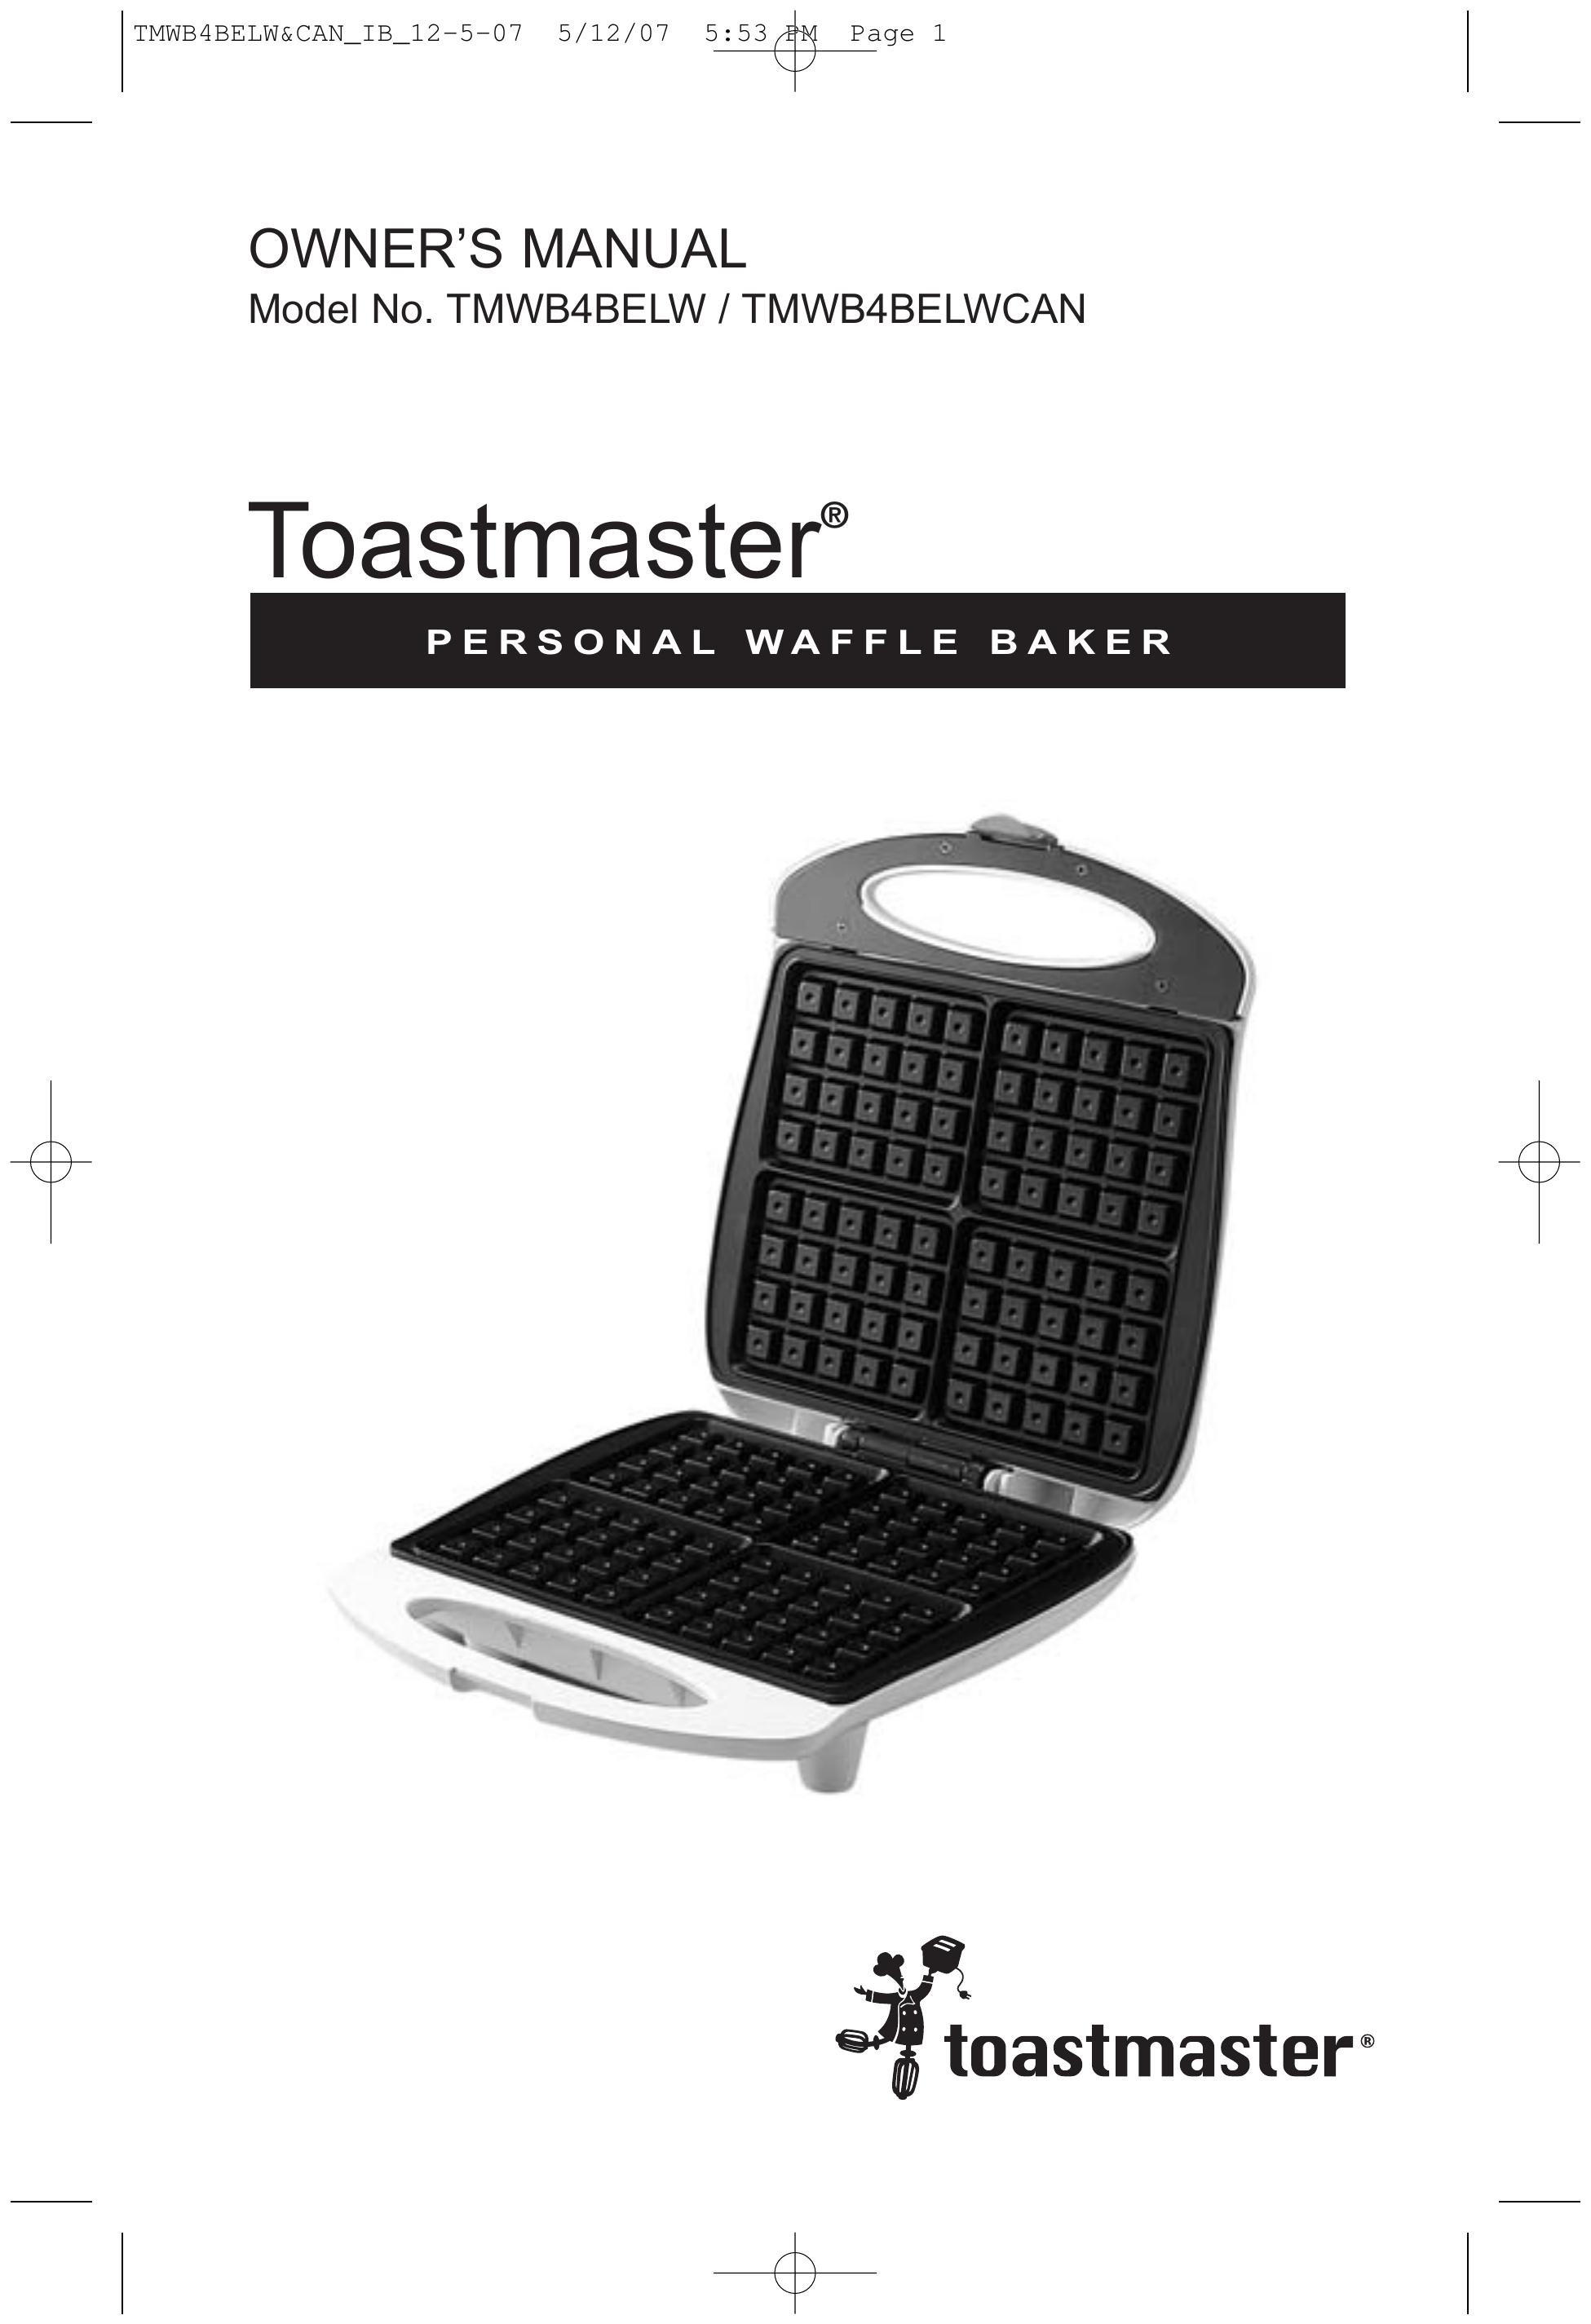 Toastmaster TMWB4BELW Waffle Iron User Manual